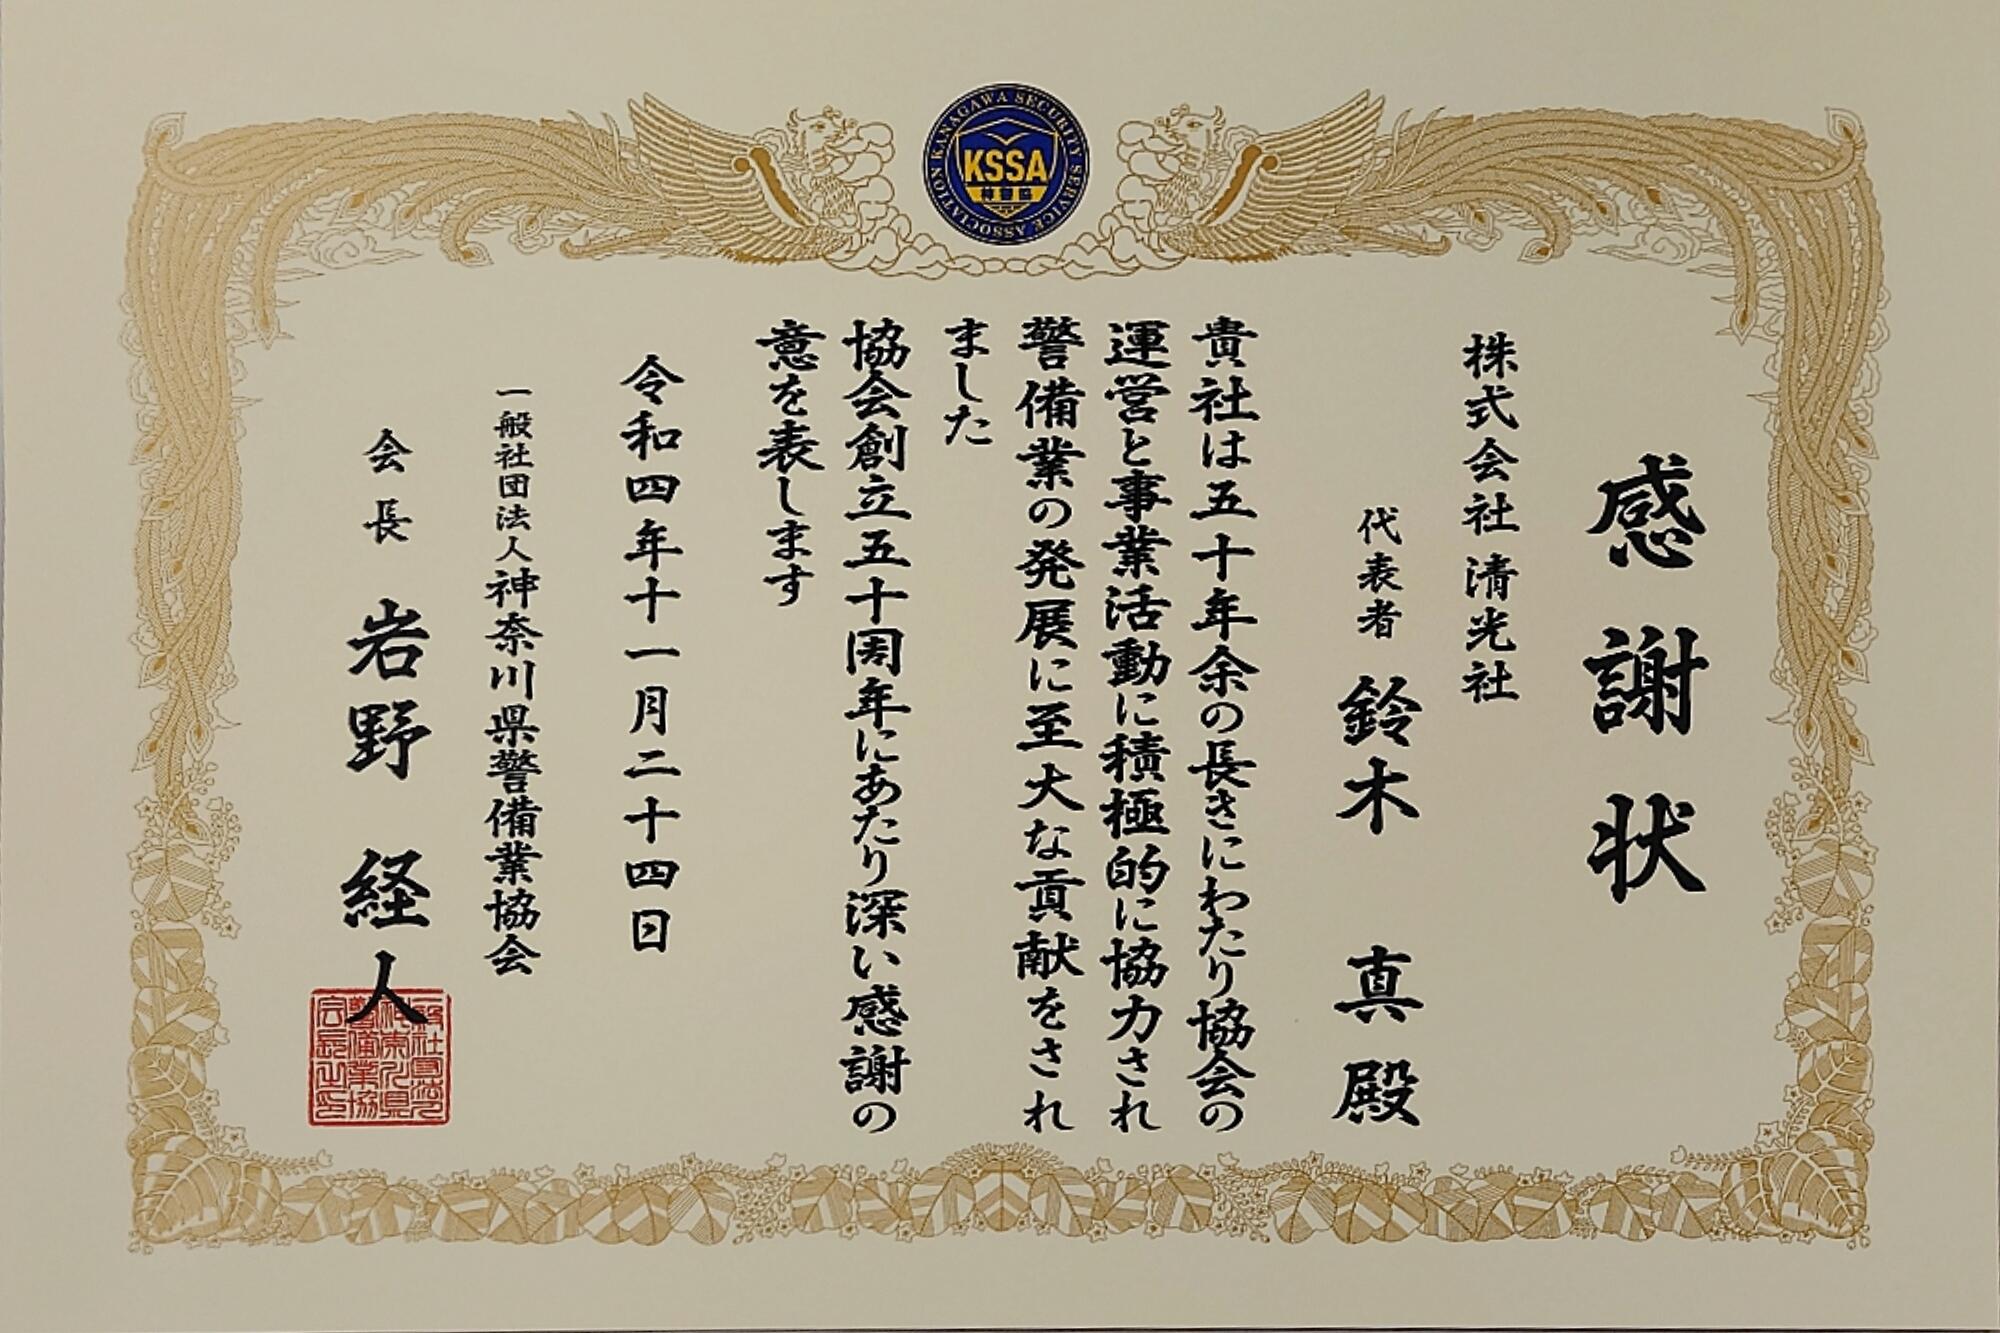 神奈川県警備業協会より感謝状をいただきました